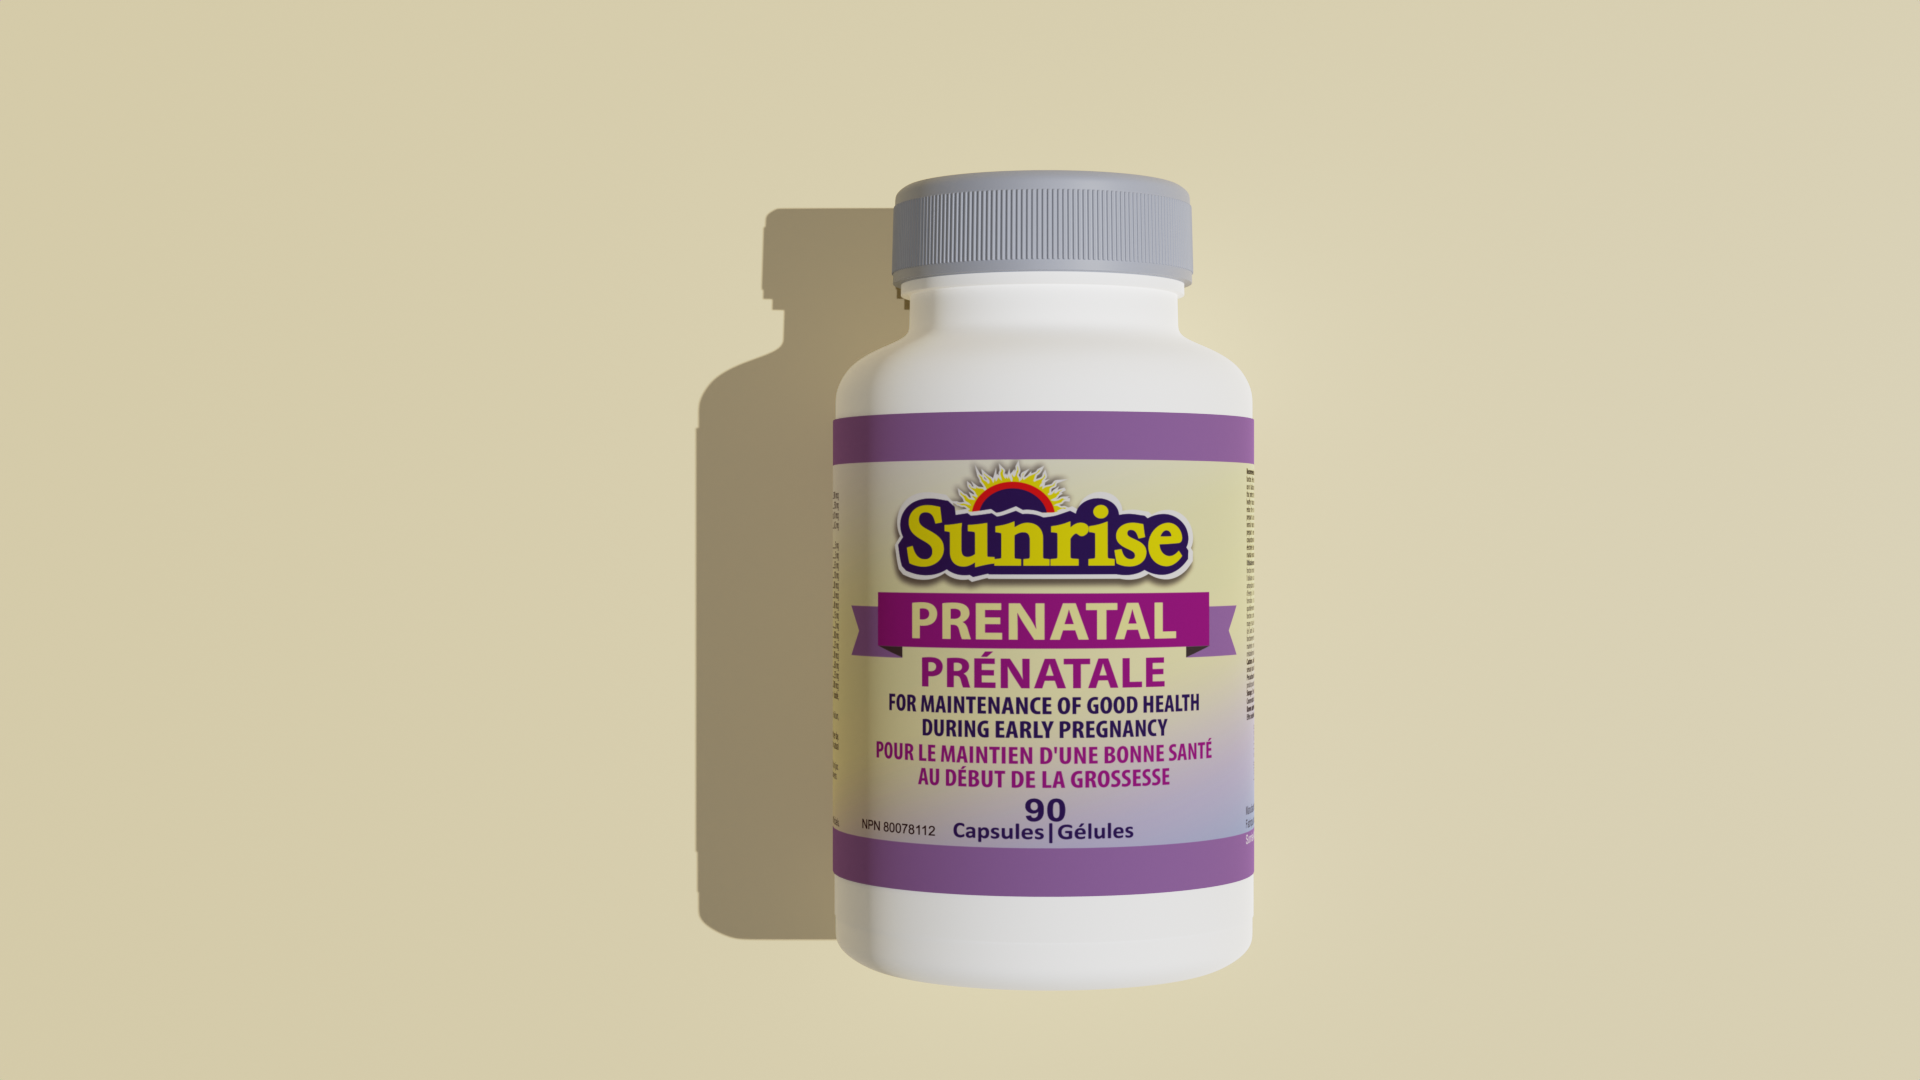 Sunrise Prenatal – Capsules